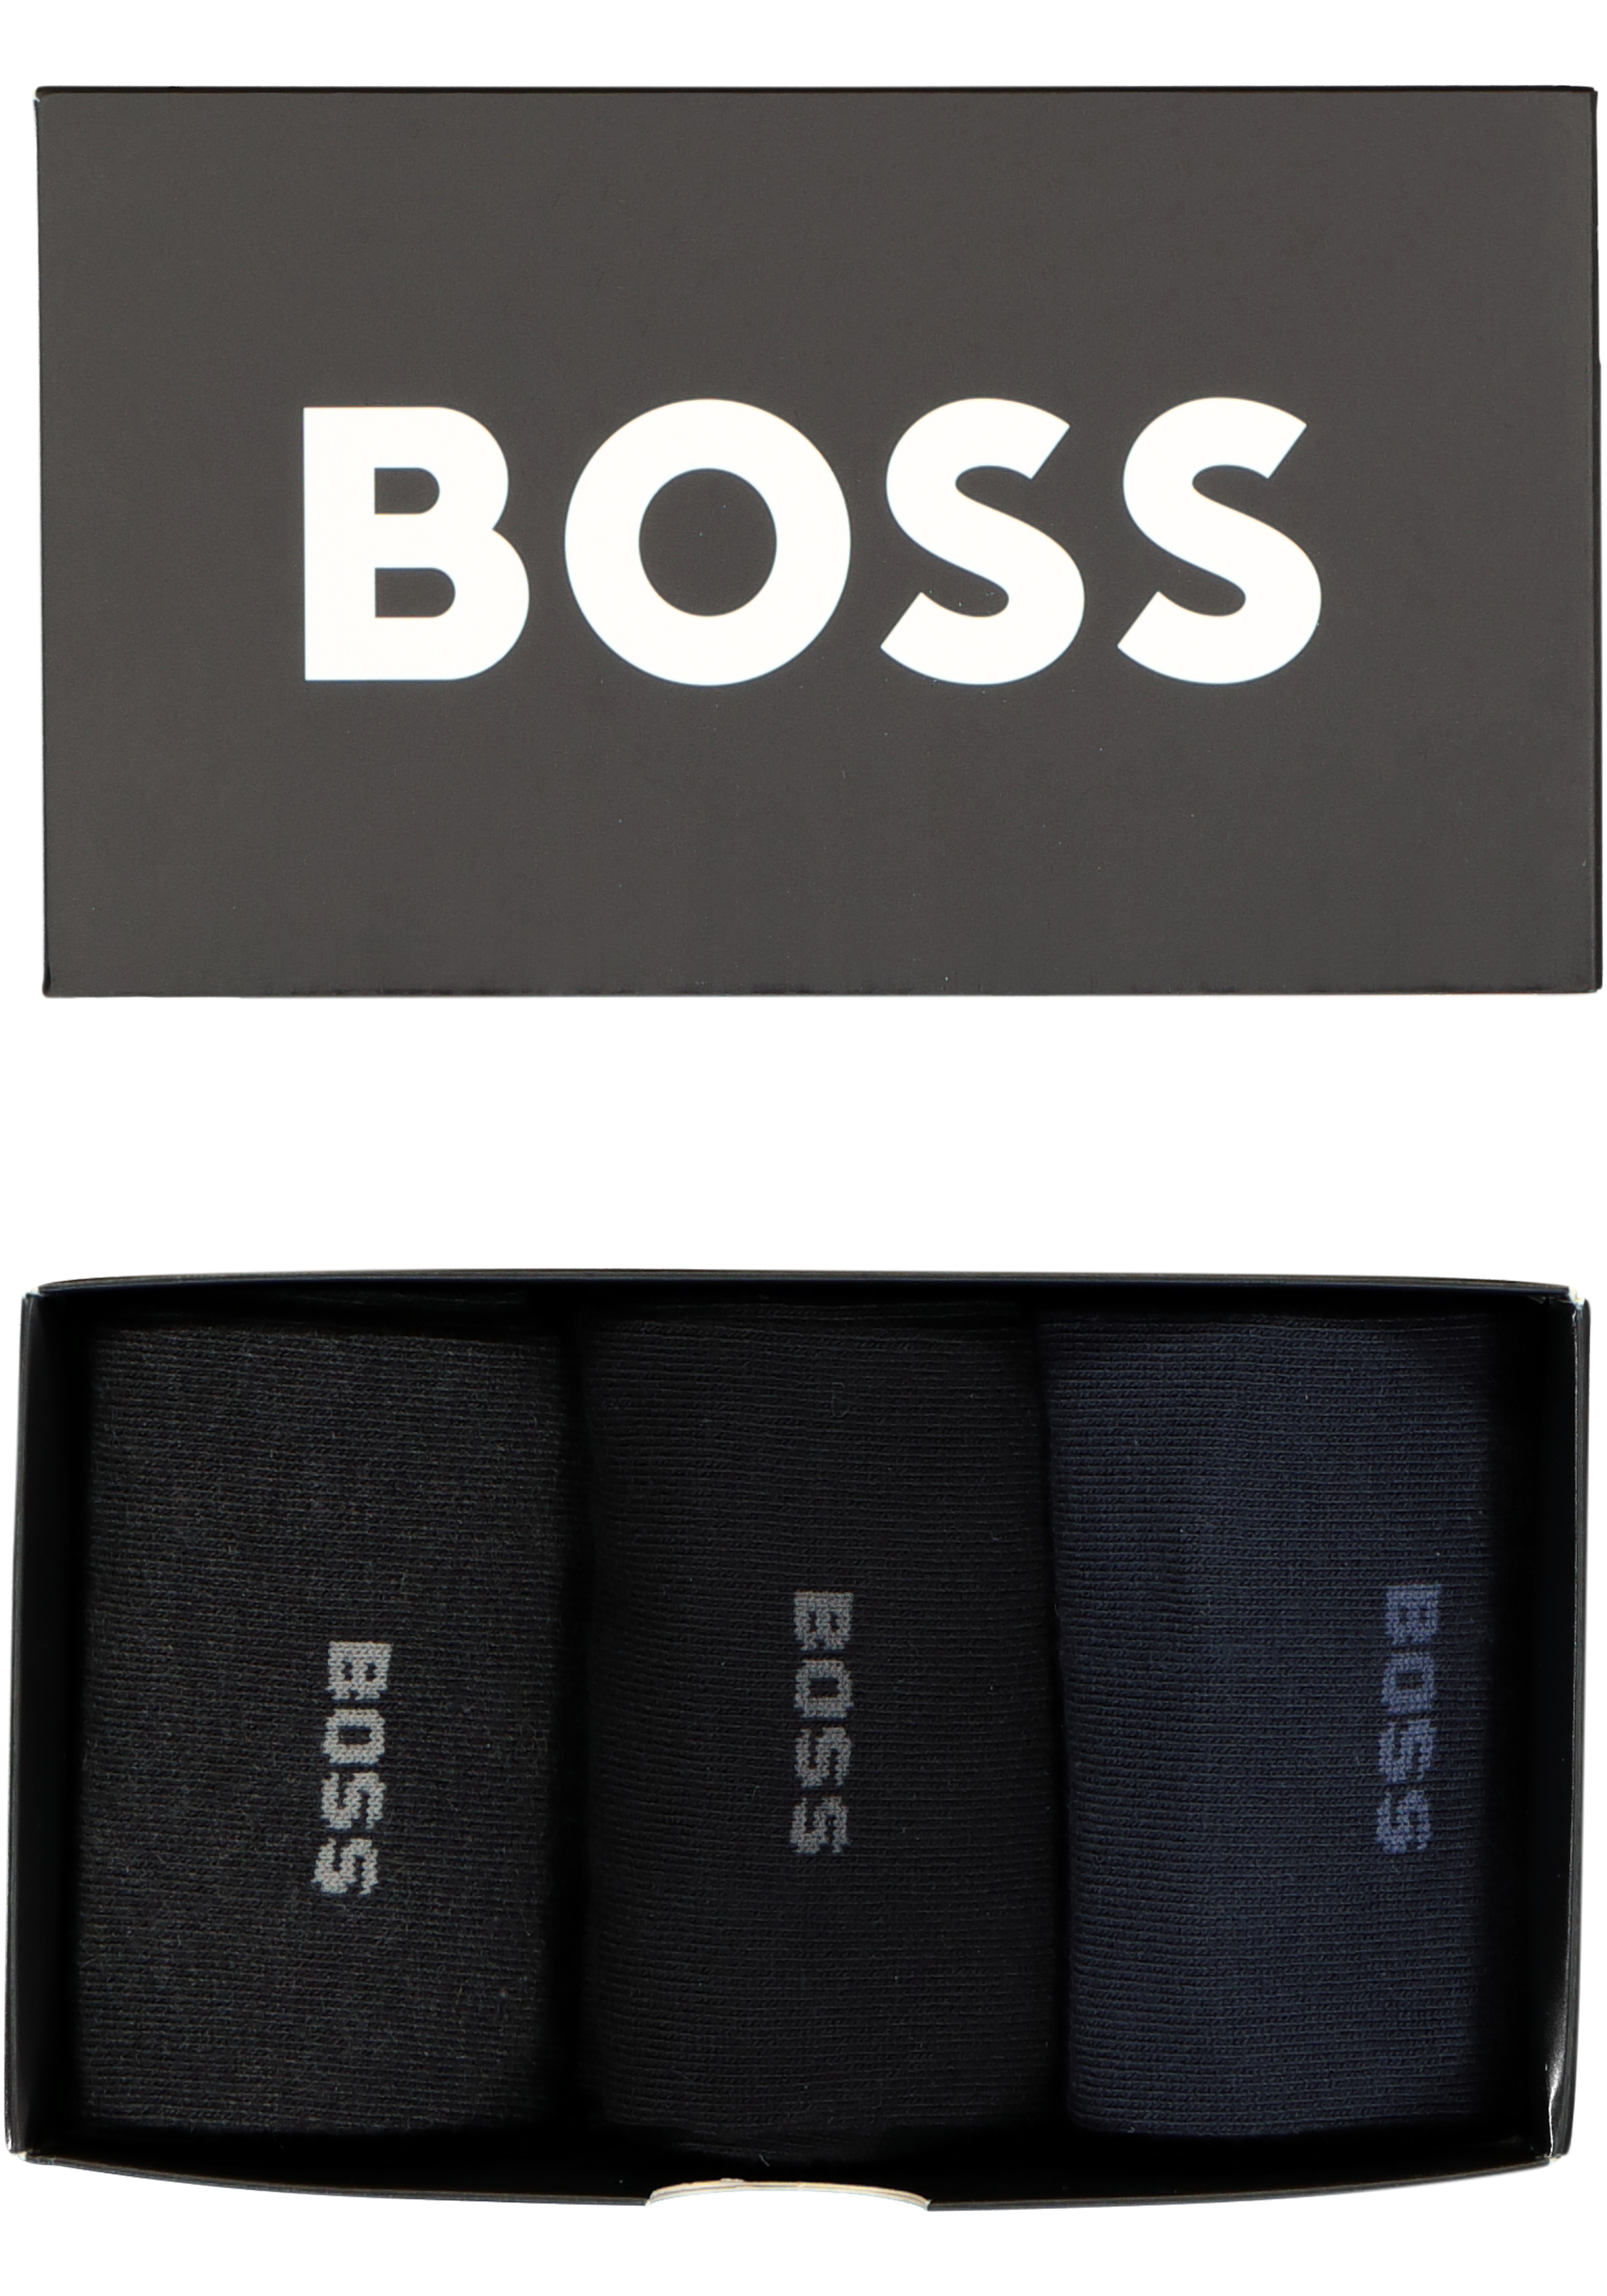 HUGO BOSS cadeauset sokken, giftbox met 3 paar heren sokken, blauw, zwart en grijs